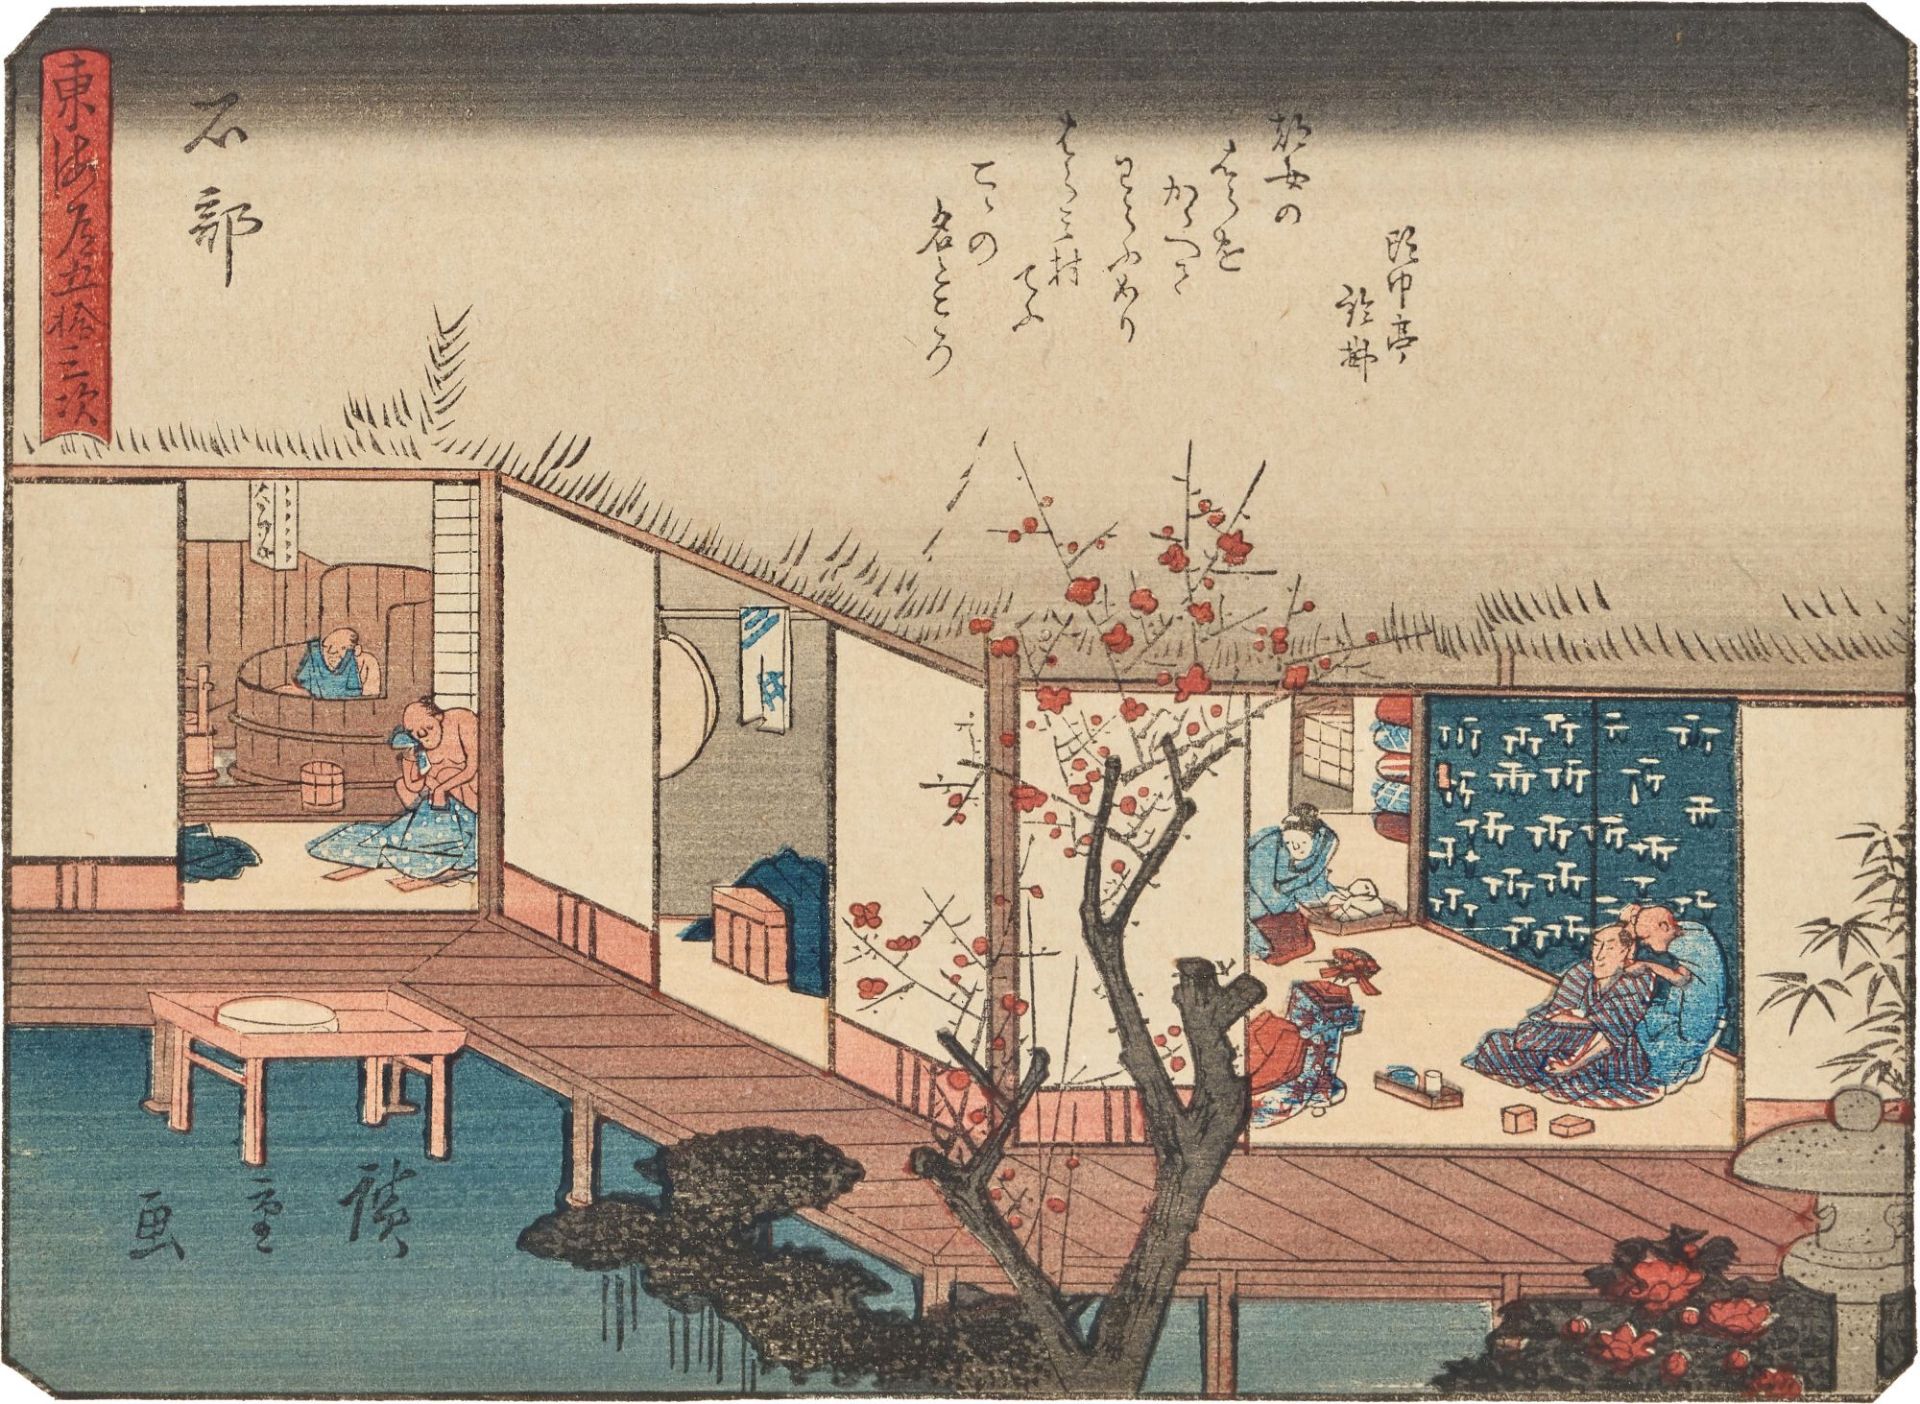 UTAGAWA, HIROSHIGE I, Nachdruck - Reprint: "Ishibe".